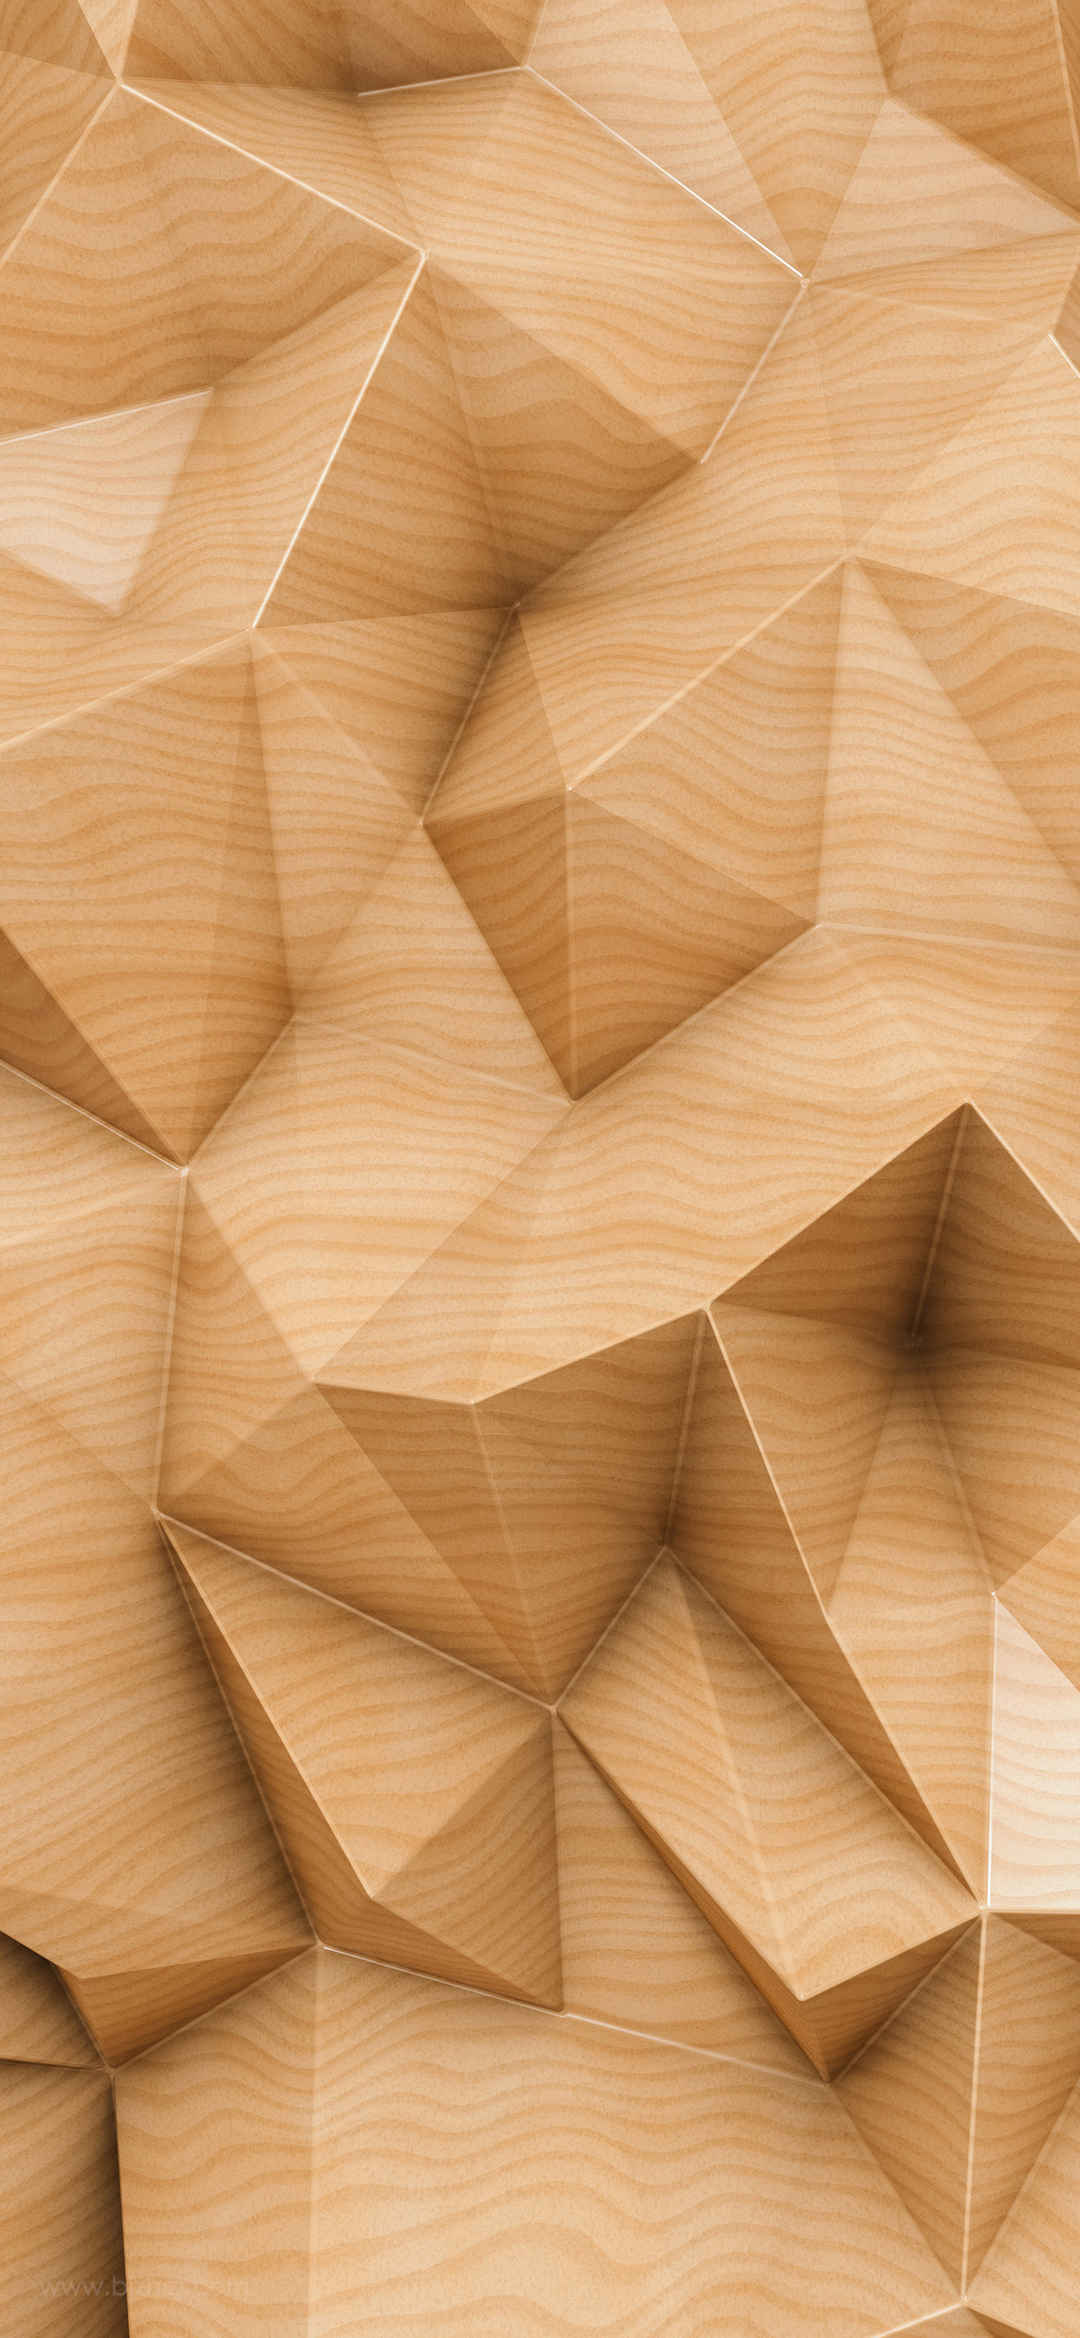 木头纹理立体效果手机壁纸